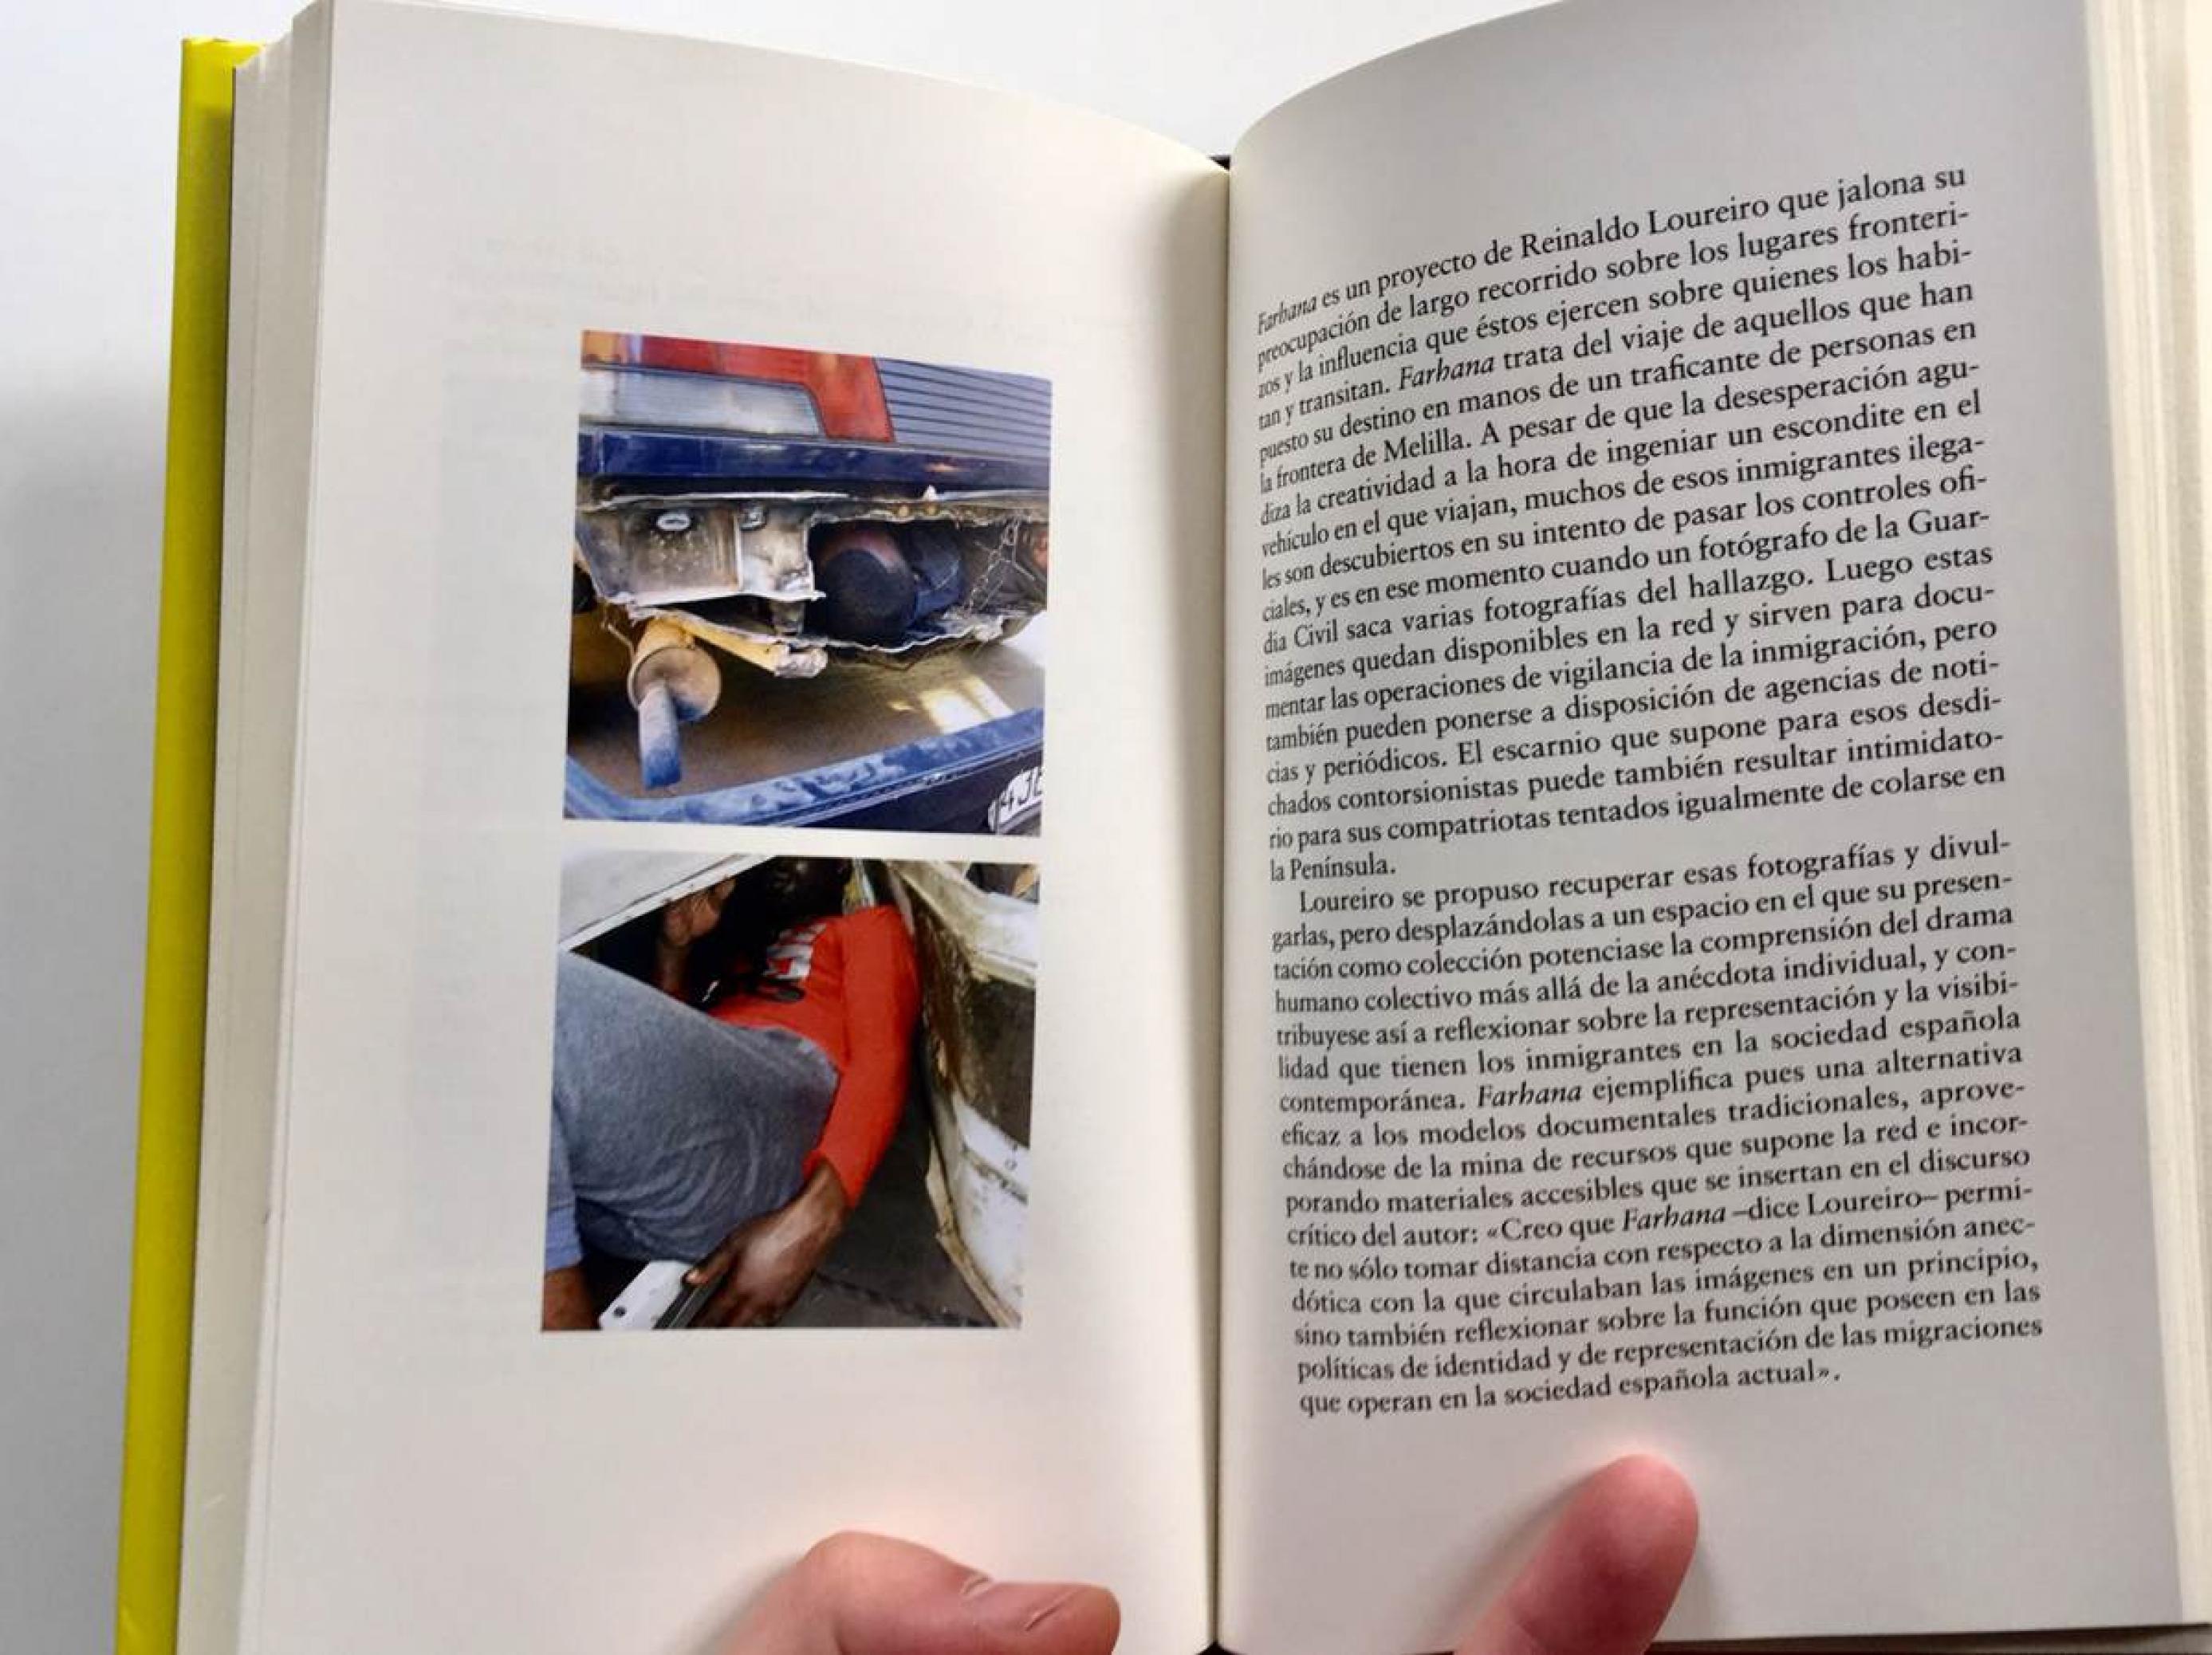 Der Theoretiker und Fotokünstler Joan Fontcuberta erwähnt in seinem Buch „La Furia de las imágenes“ den Fotokünstler Reinaldo Loureiro, der Bilder sammelt, die von der spanischen Polizei bei der Untersuchung von LKWs gemacht werden.